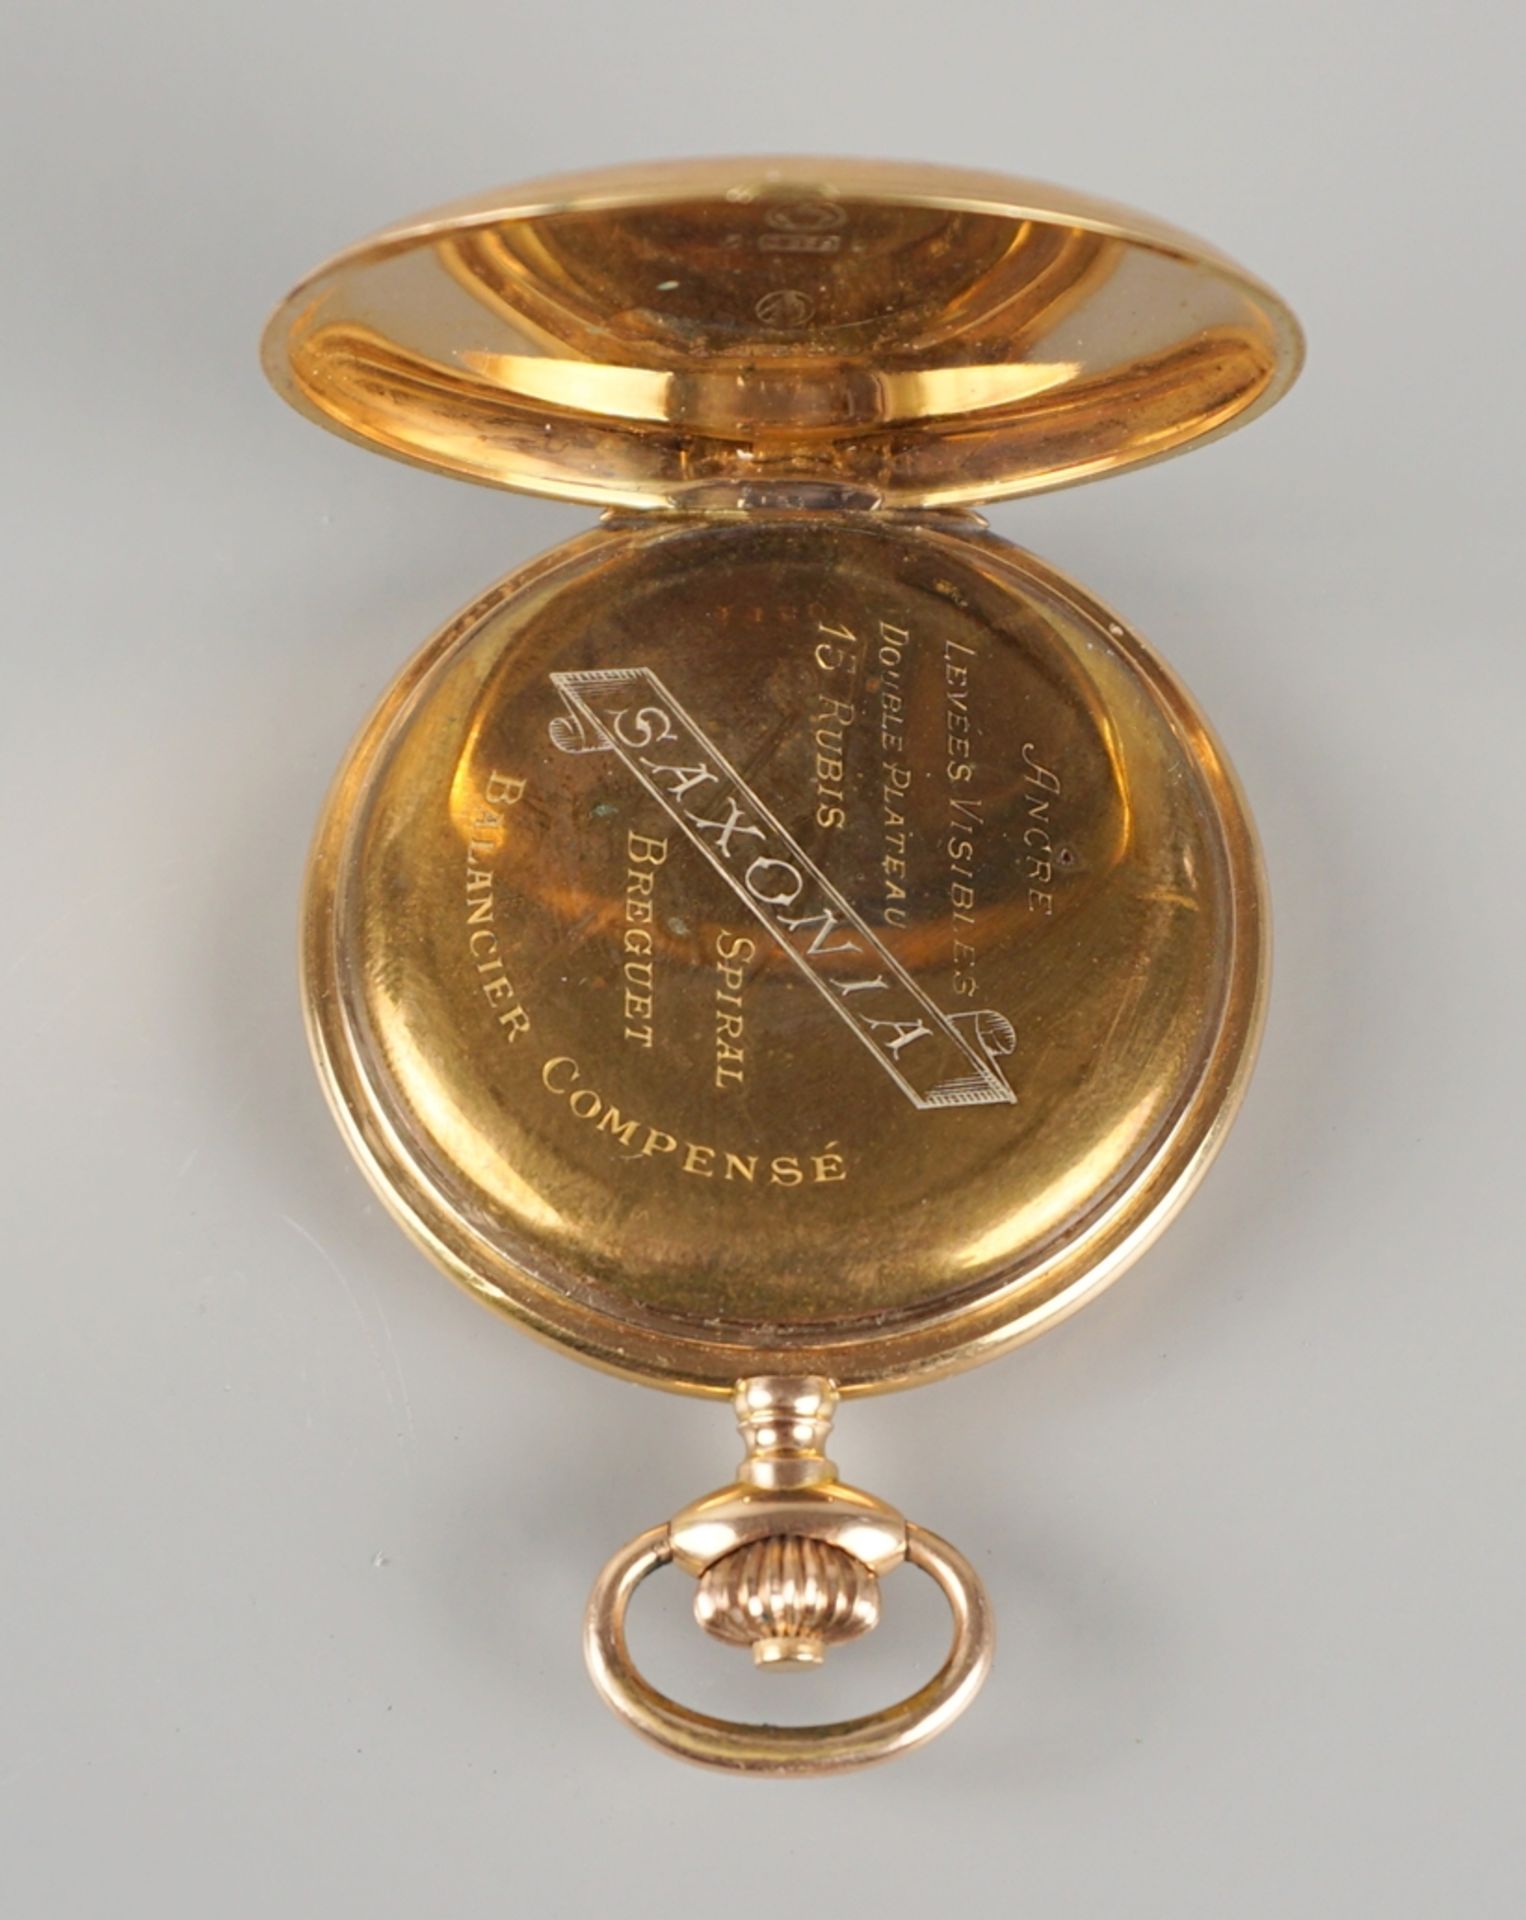 golden savonette "Saxonia", 14K gold, around 1900 - Image 4 of 6